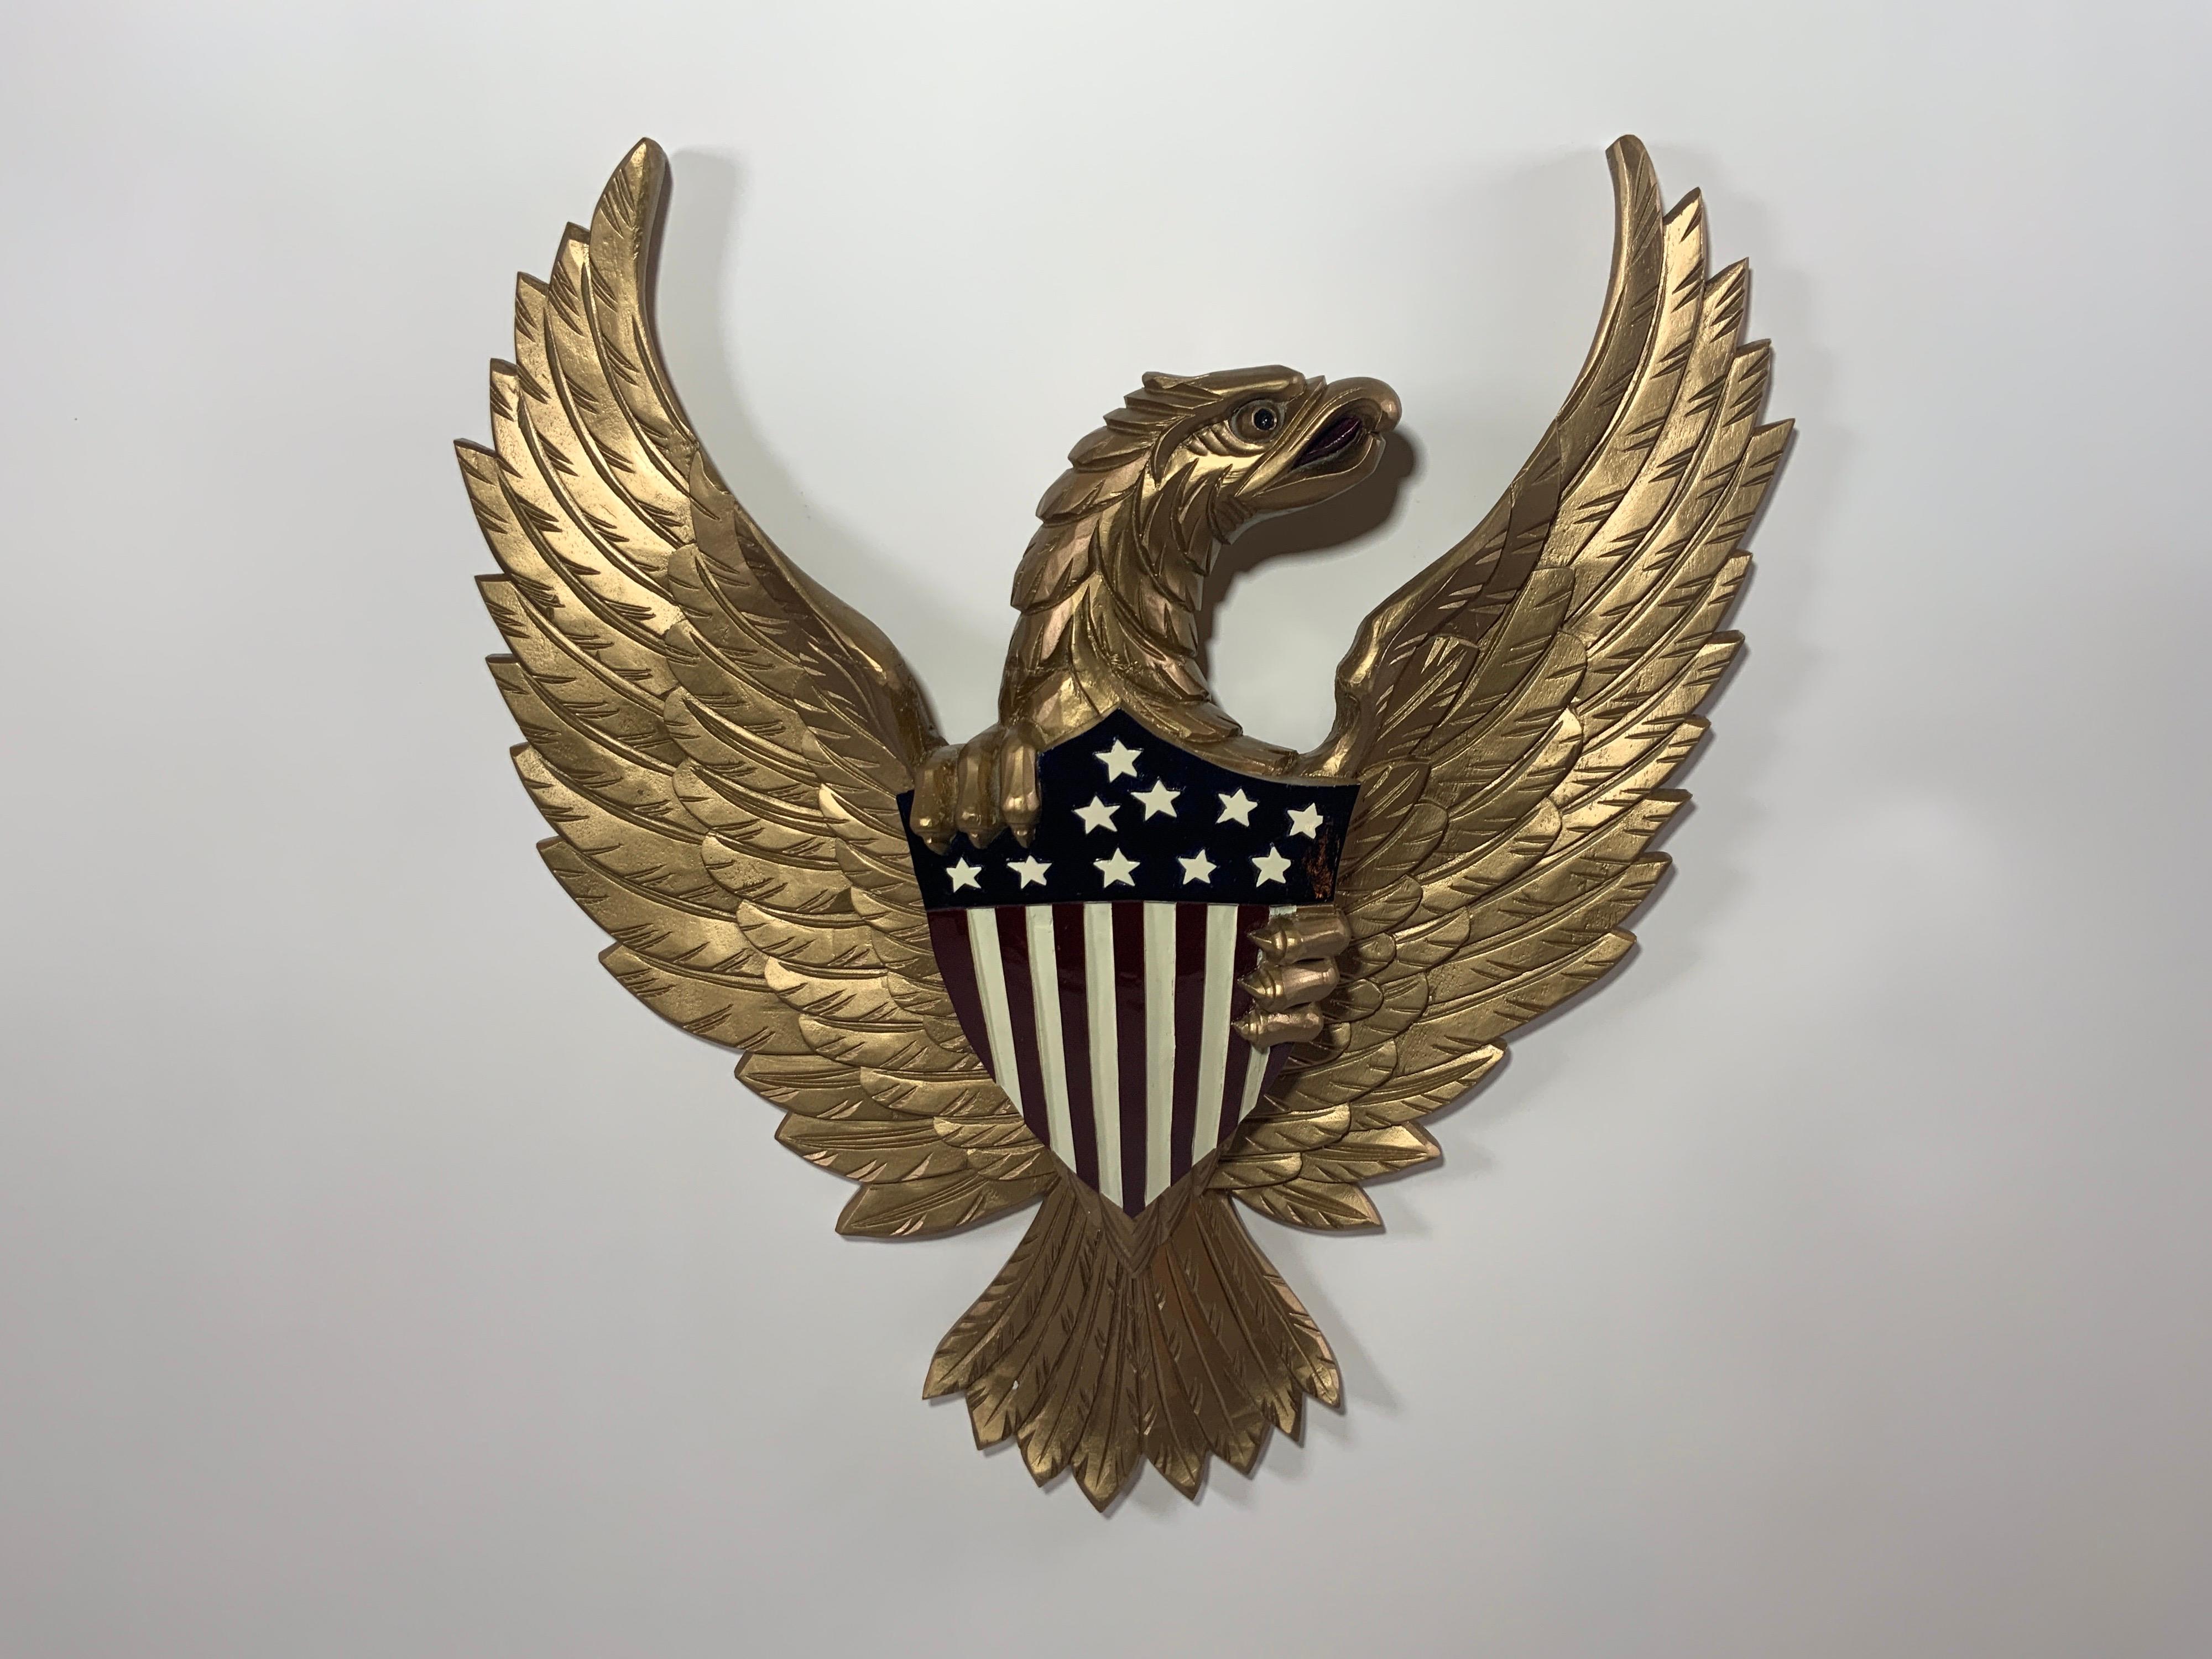 Geschnitzter Holzadler mit altgoldenem Anstrich. Der Adler ist sehr detailliert und umklammert das Große Siegel in Anlehnung an das US-Wappen. Hinteres Aufhängeseil.

Gesamtabmessungen: 21 